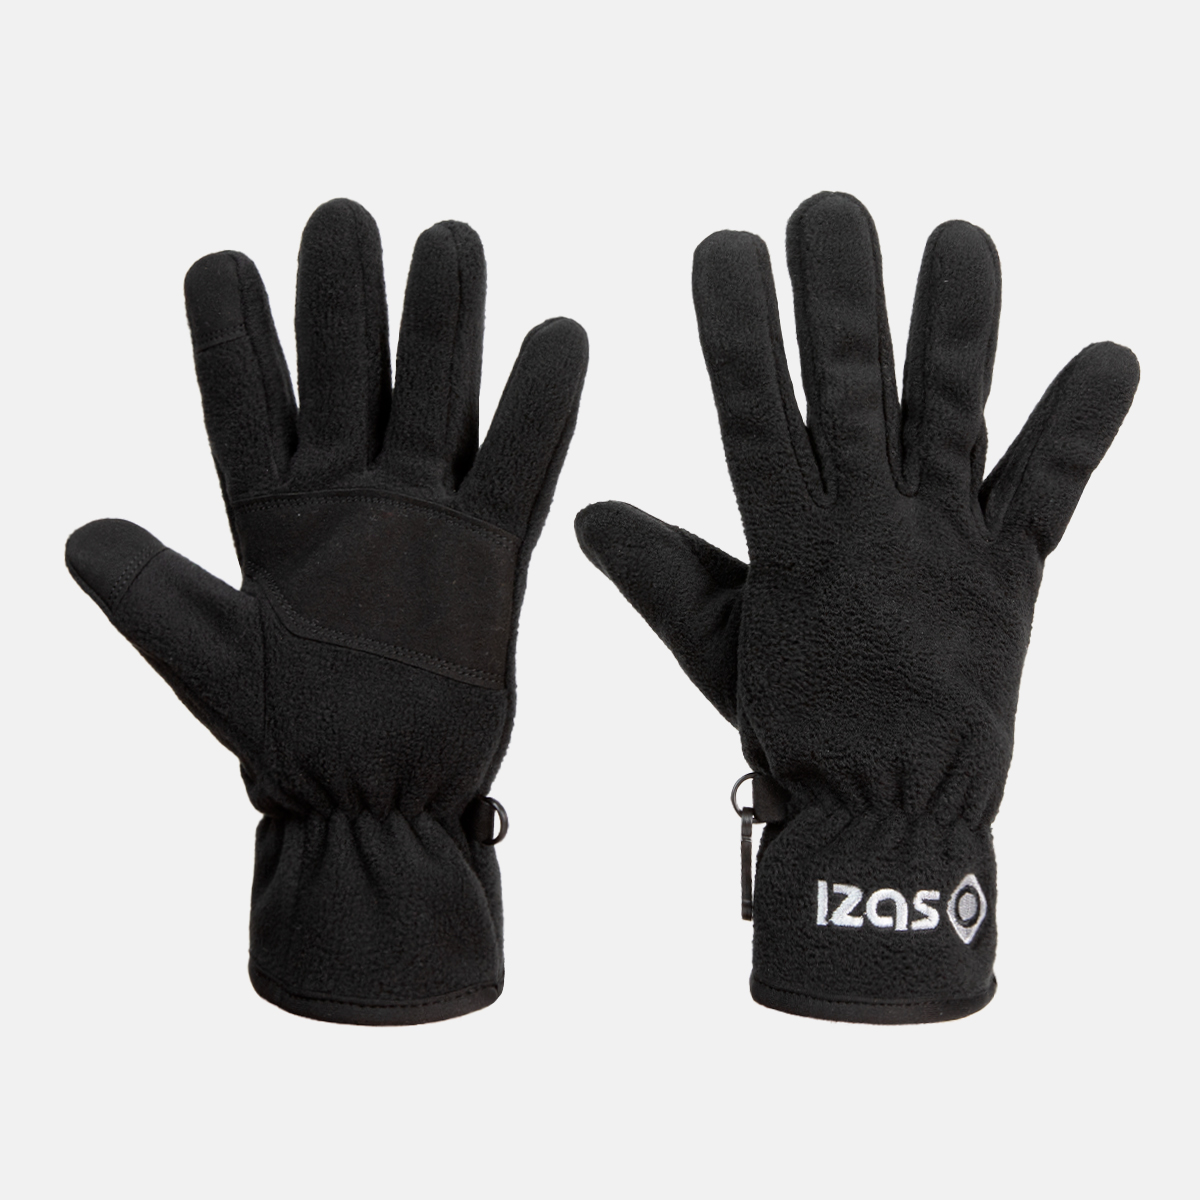  black unisex gloves i vik